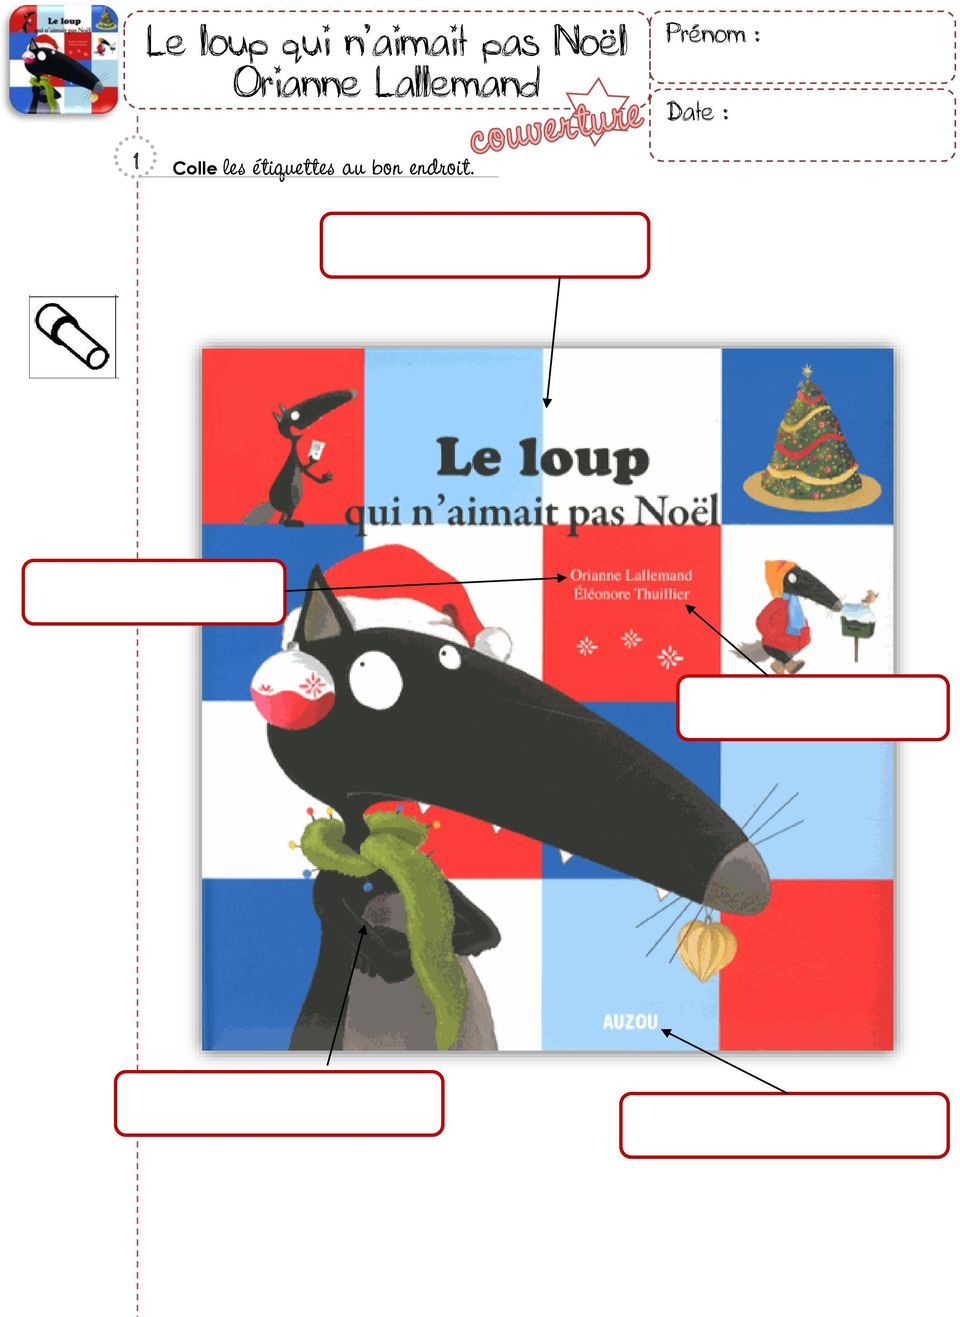 Le Loup Qui N Aimait Pas Noel Orianne Lallemand Pdf Free Download